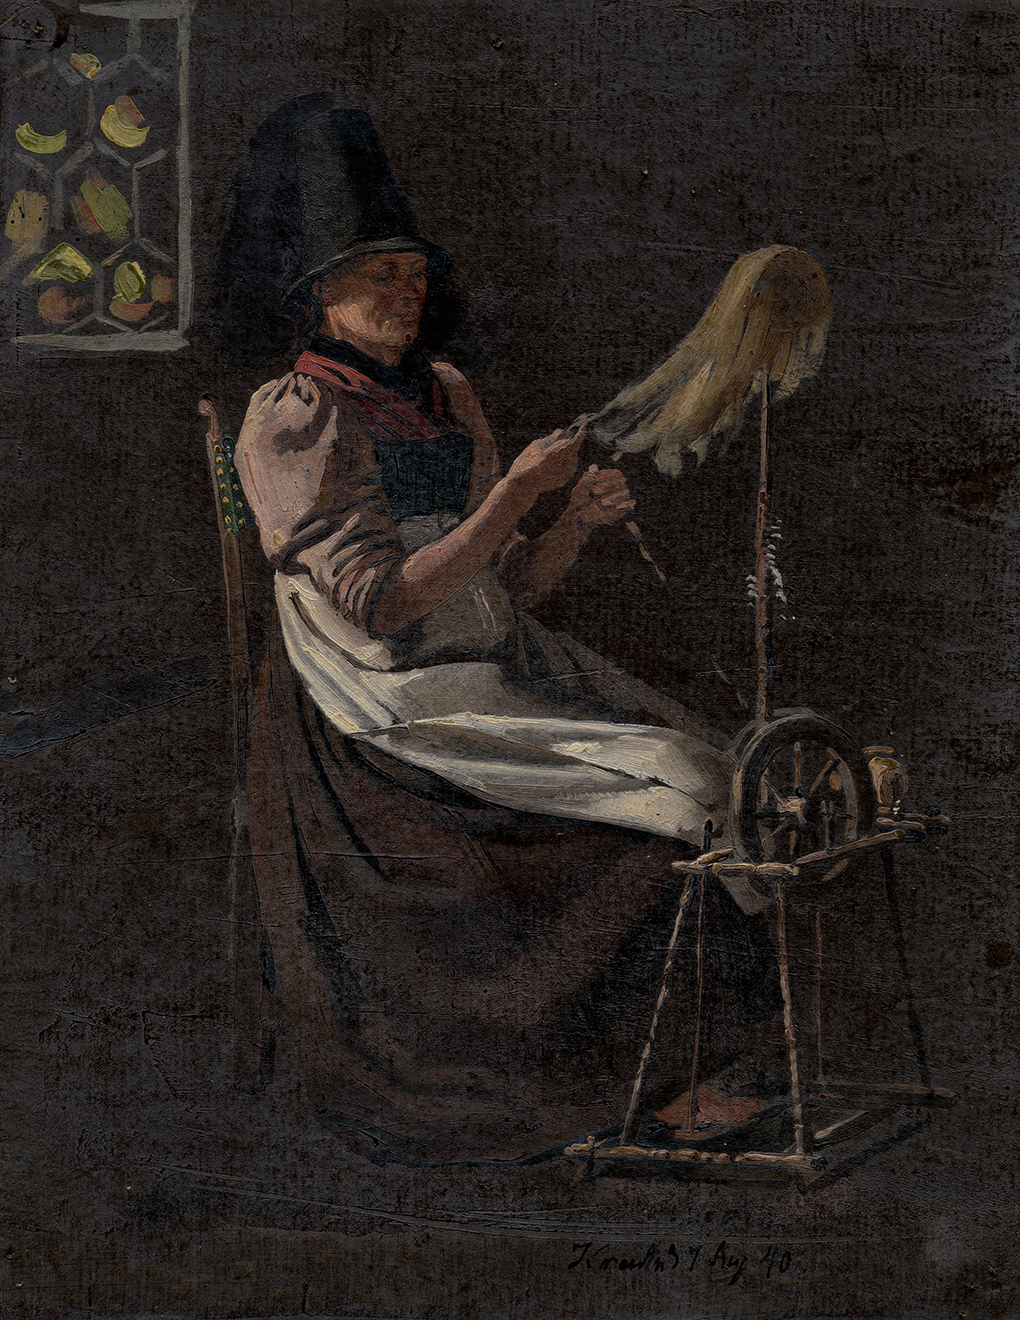 Zdj. 2 Ludwig Most, Prządka, 1840, studium olejne na papierze, praca z teki studiów Mosta, Muzeum Narodowe w Szczecinie